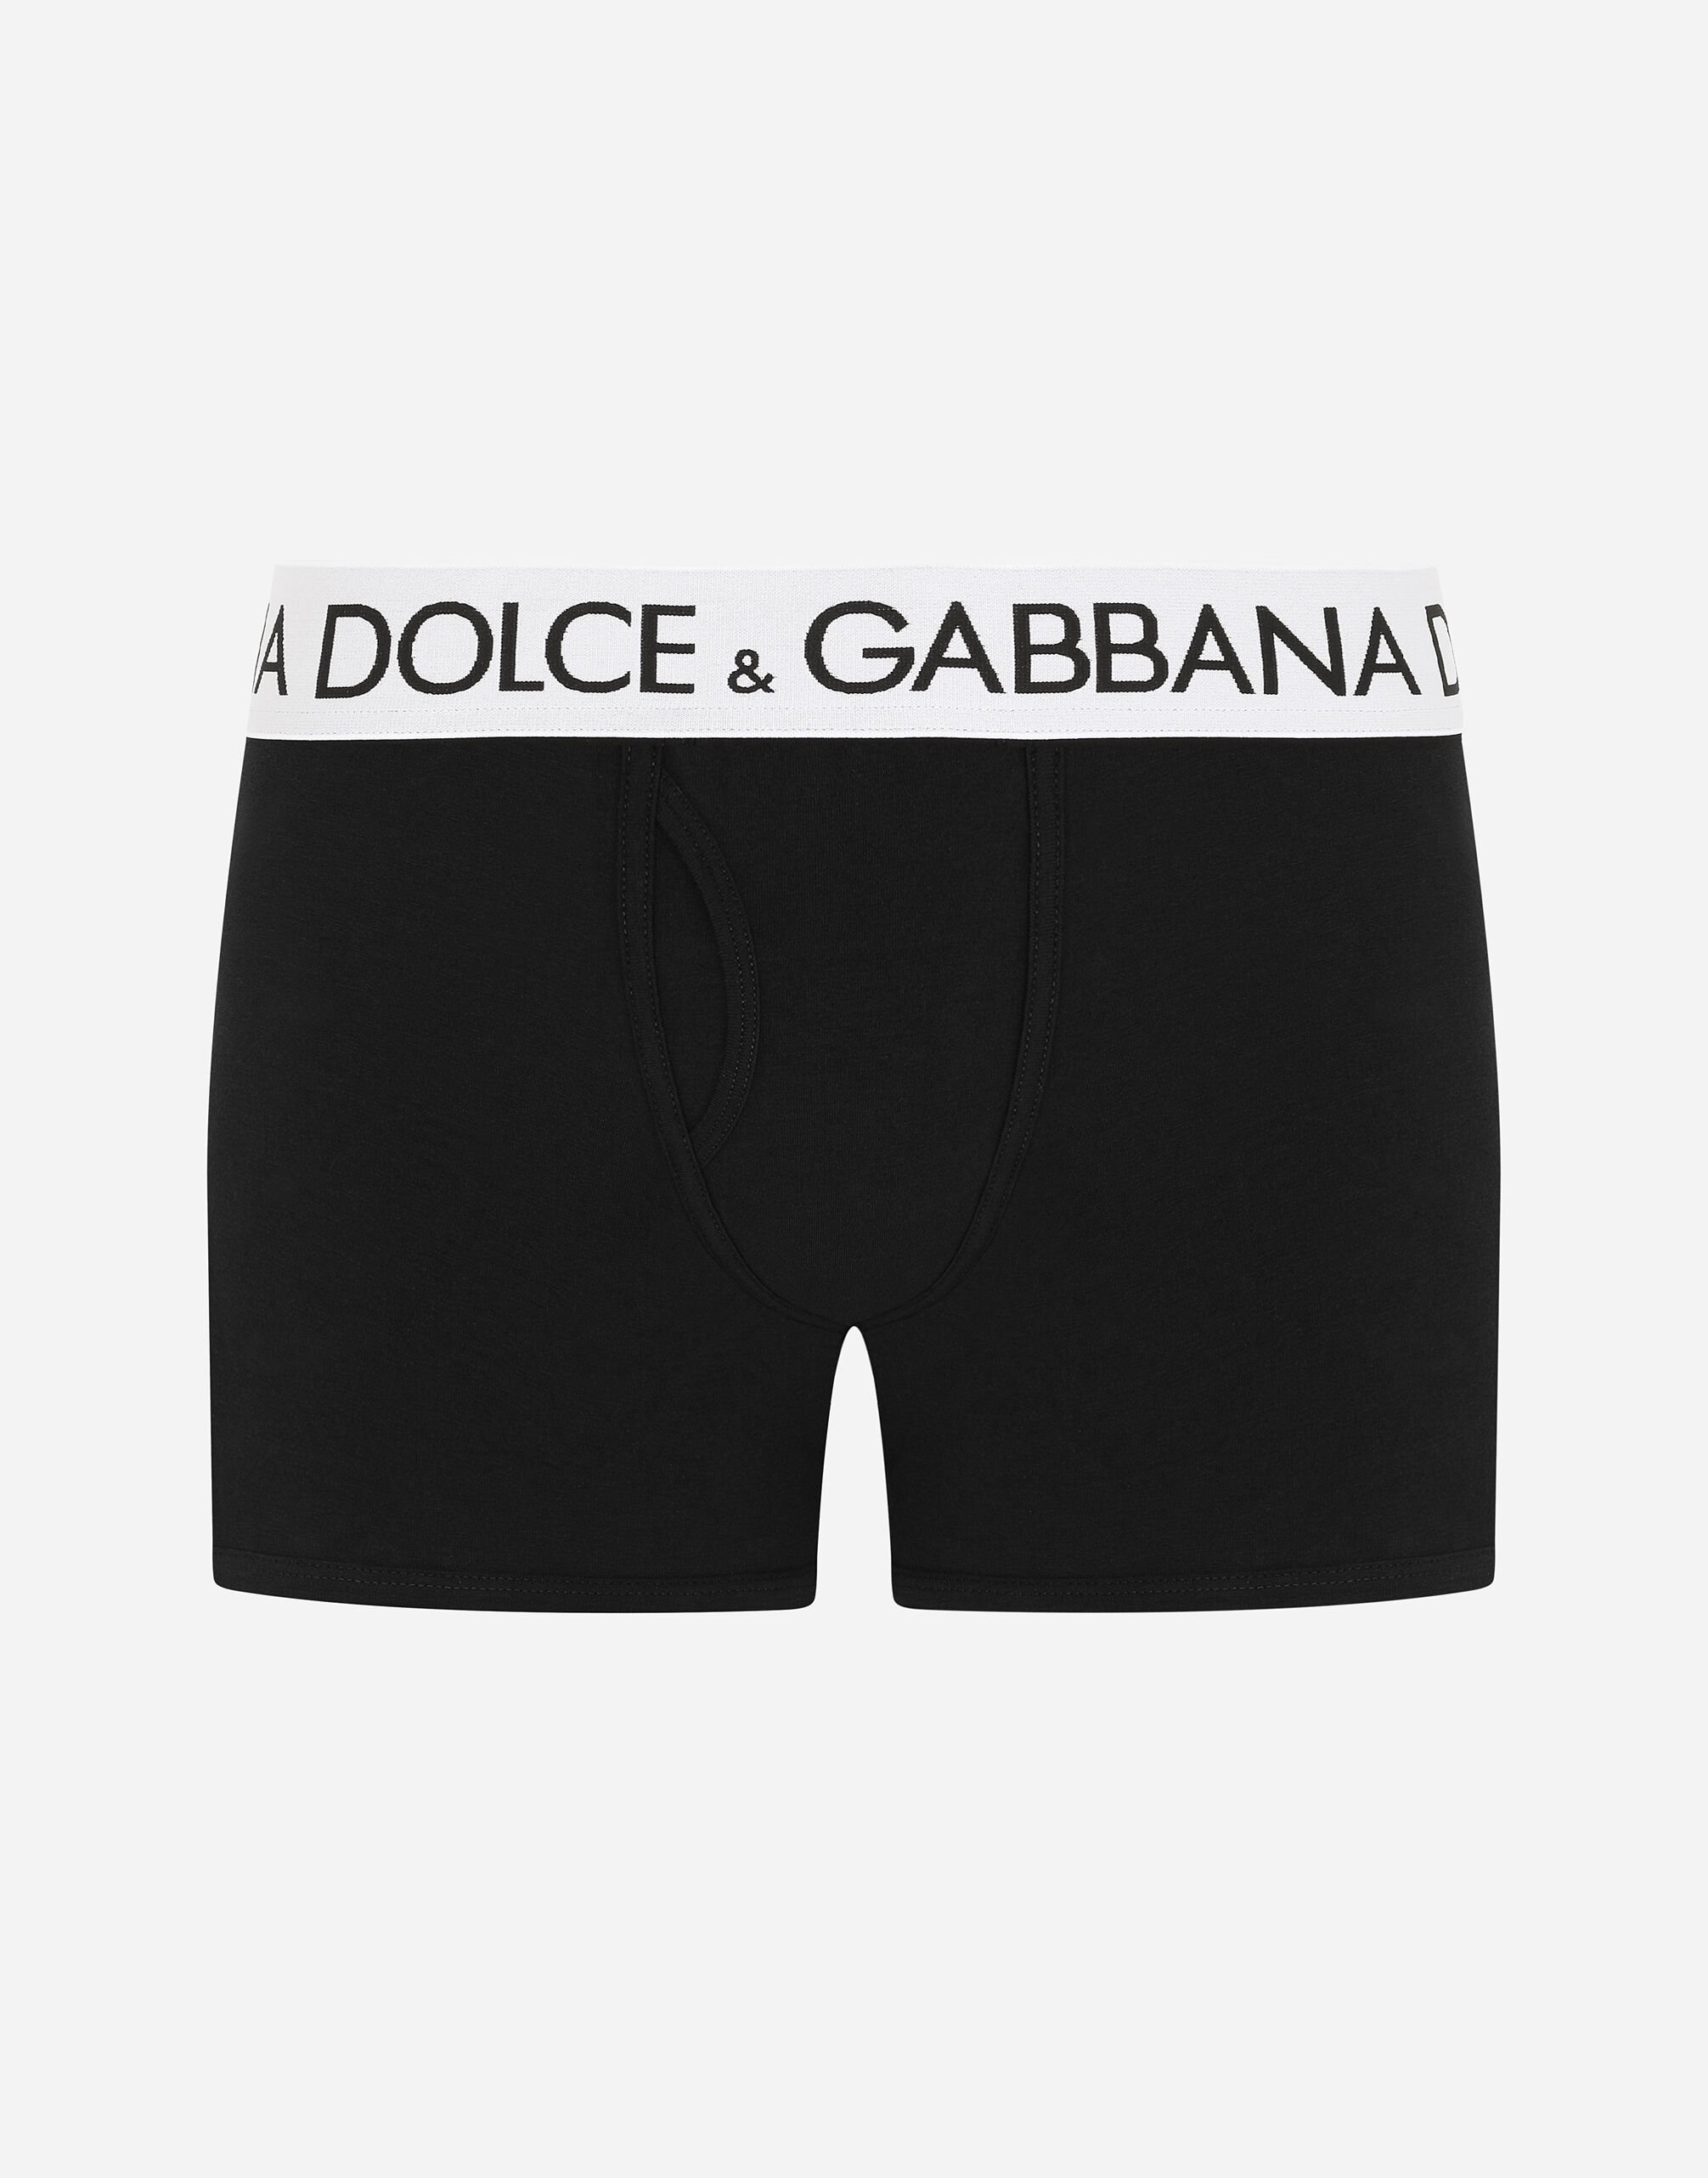 Men's Underwear: boxers, briefs, pajamas